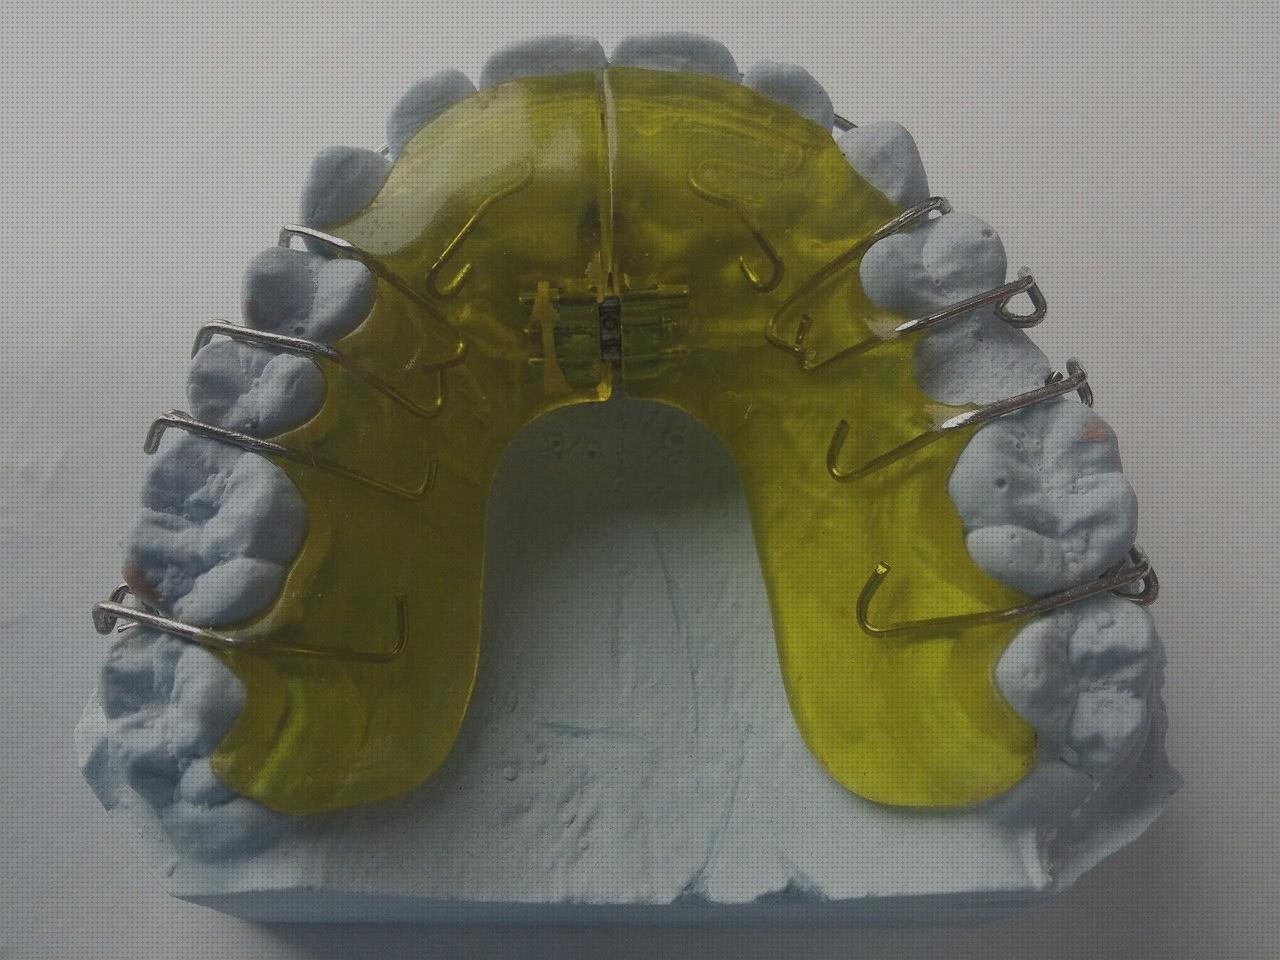 Review de ferula ortopédica dental